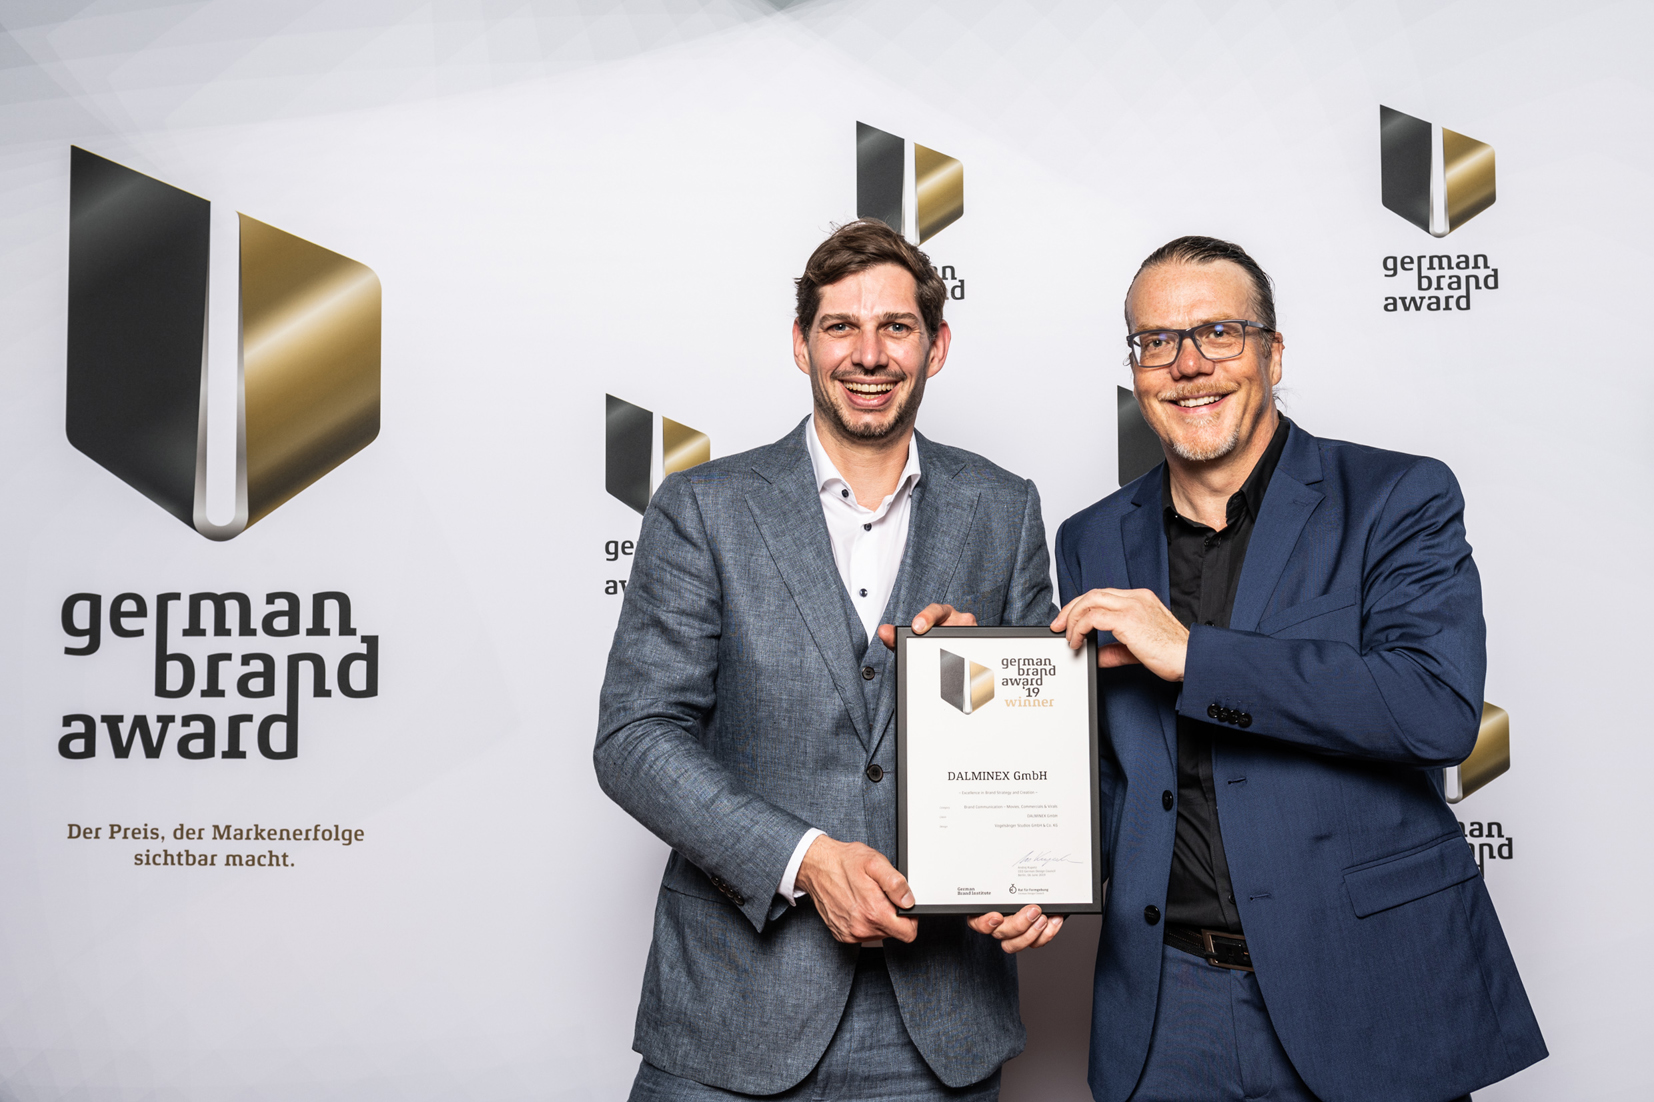 Armaturenspezialist DALMINEX gewinnt mit Imagefilm „German Brand Award 2019“